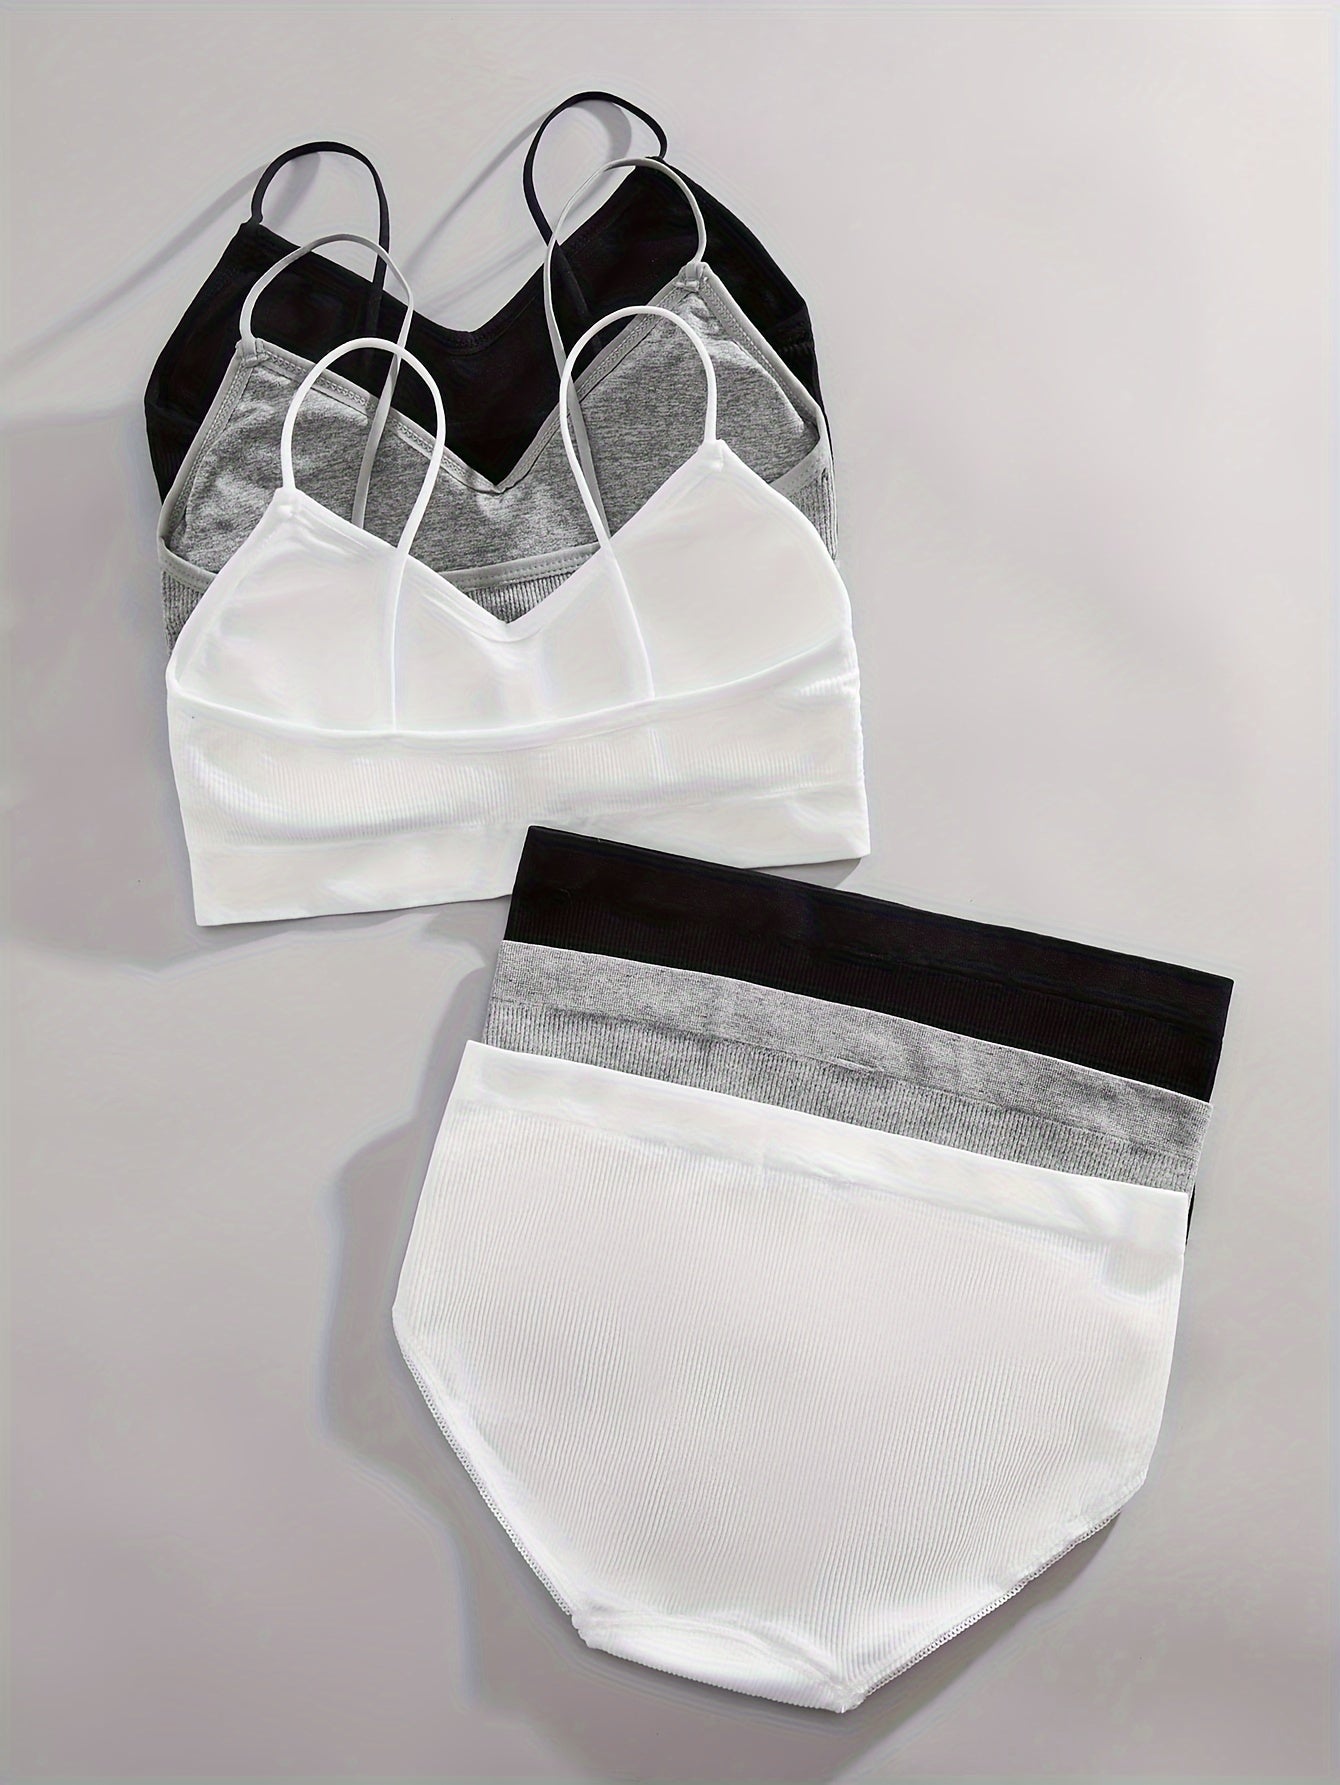 3 Sets Solid Ribbed Bra & Panties, Push Up Bra & Elastic Panties Lingerie Set, Women's Lingerie & Underwear